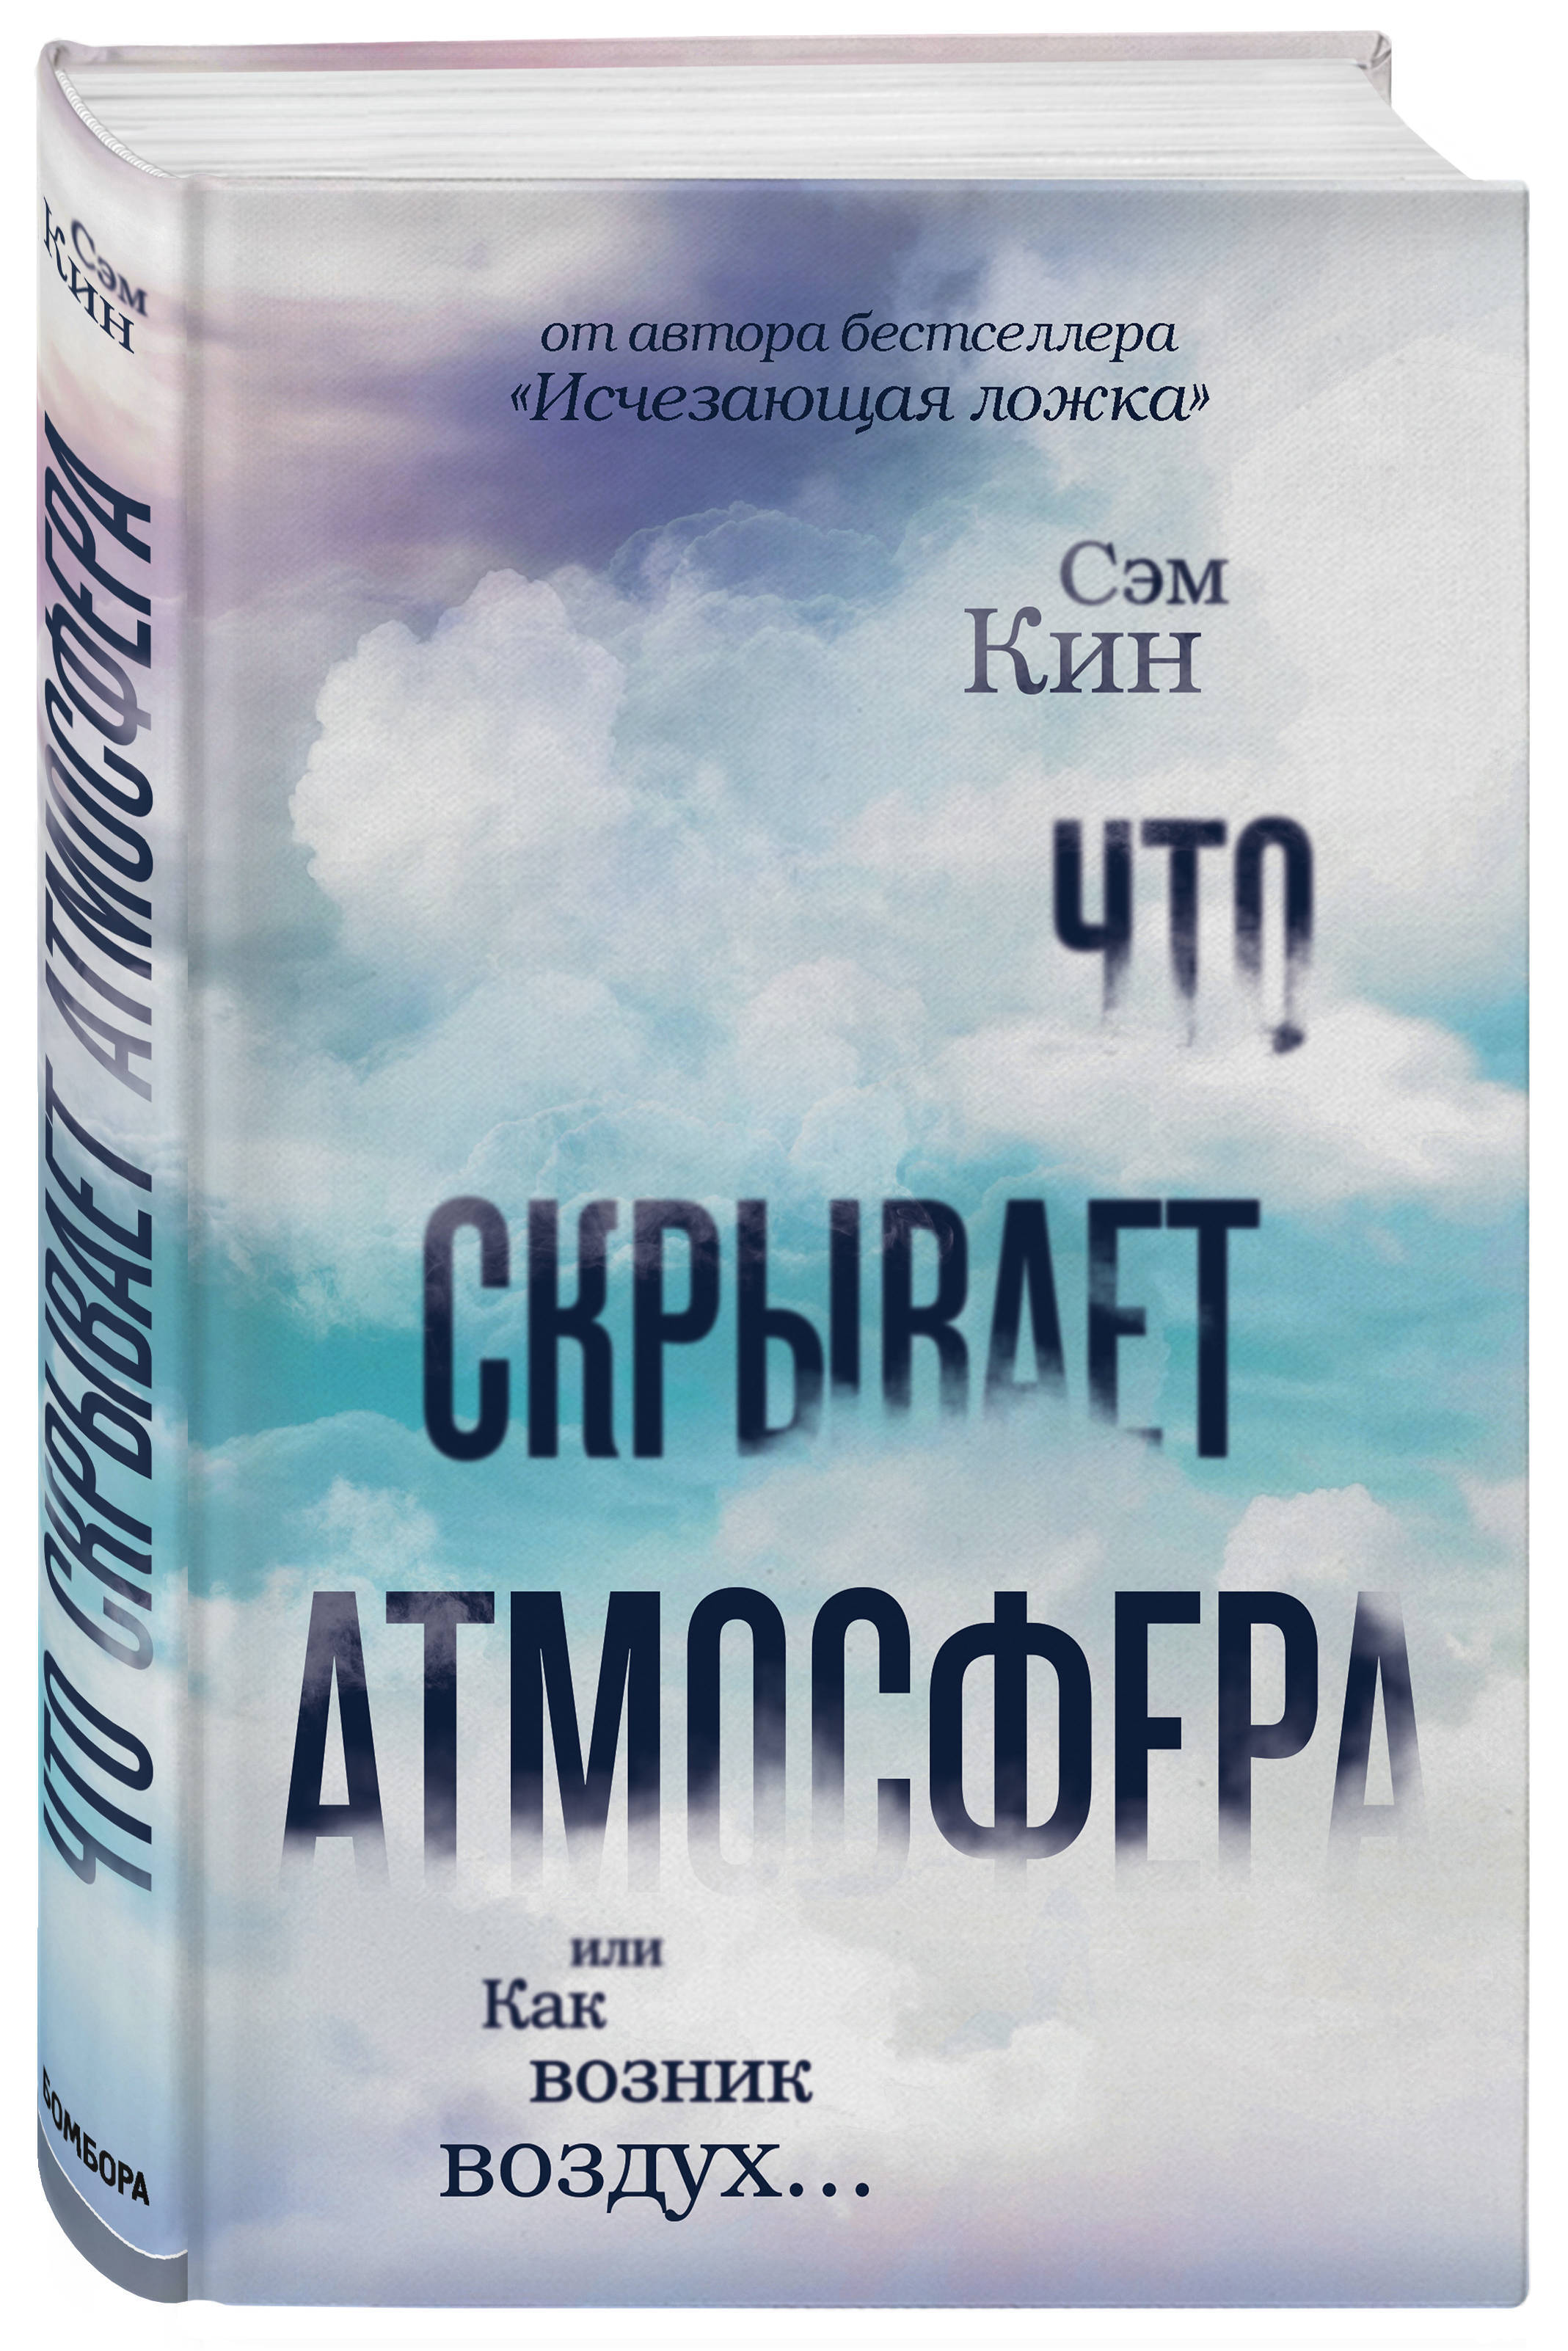 Обложка книги Кин Сэм: Что скрывает атмосфера или Как возник воздух